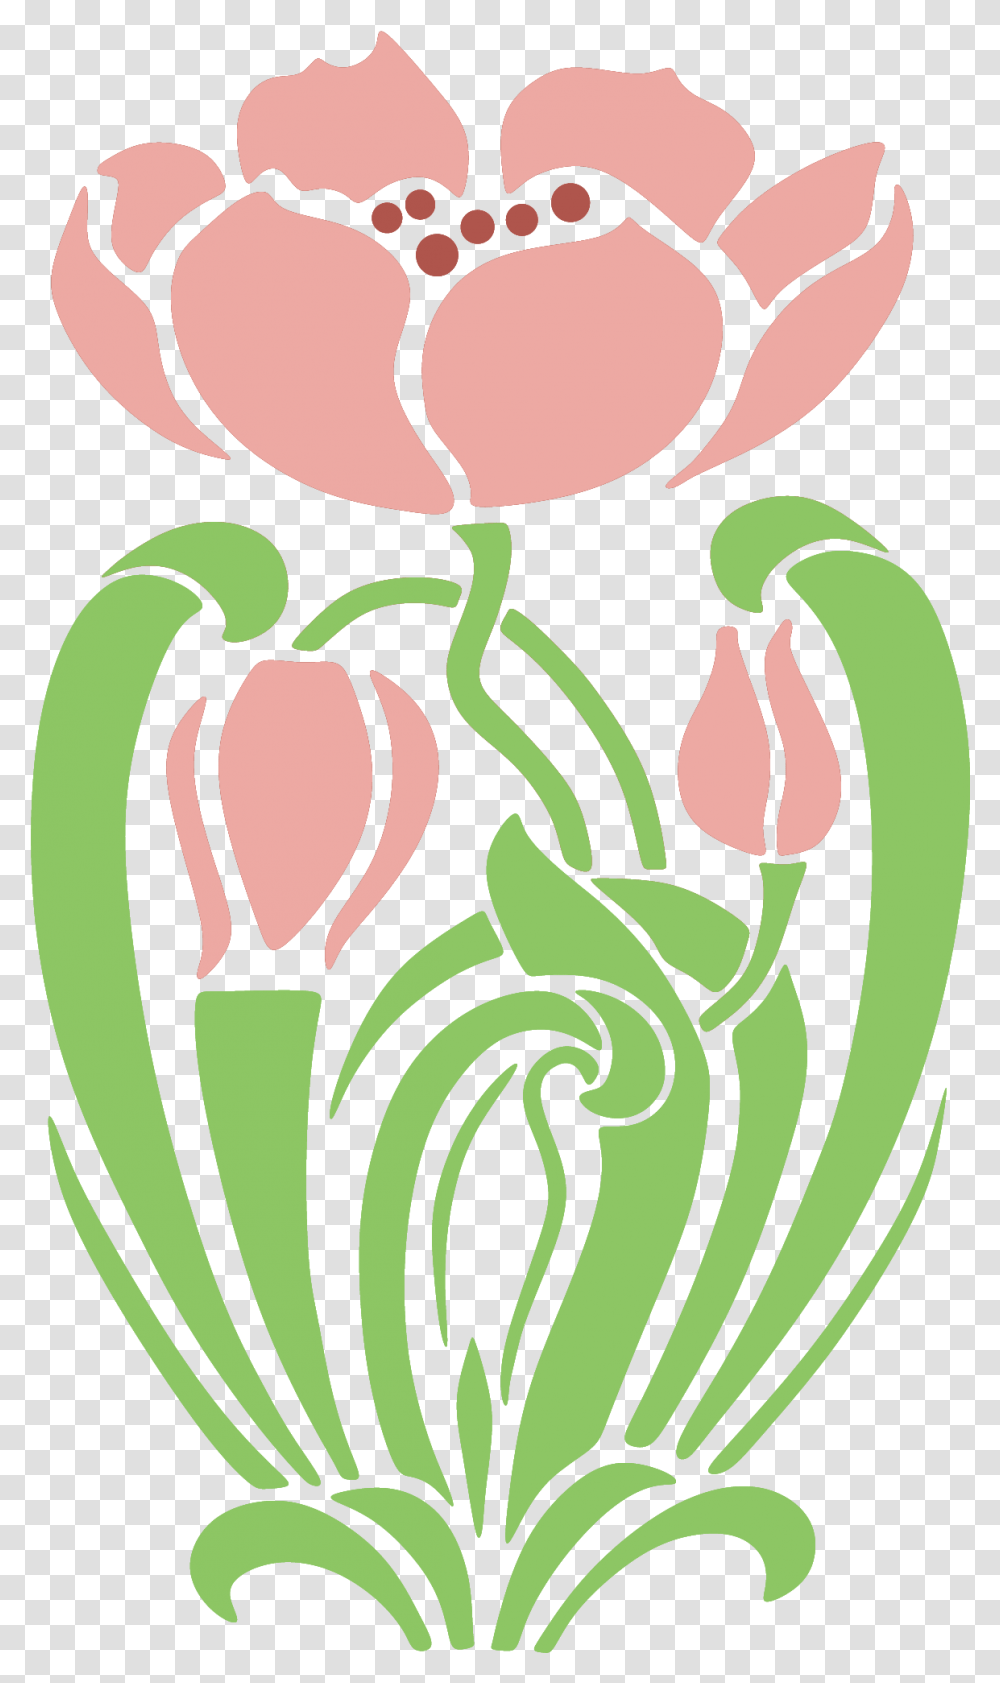 Art Nouveau Art Deco Stencil Art Nouveau, Plant, Produce, Food, Vegetable Transparent Png